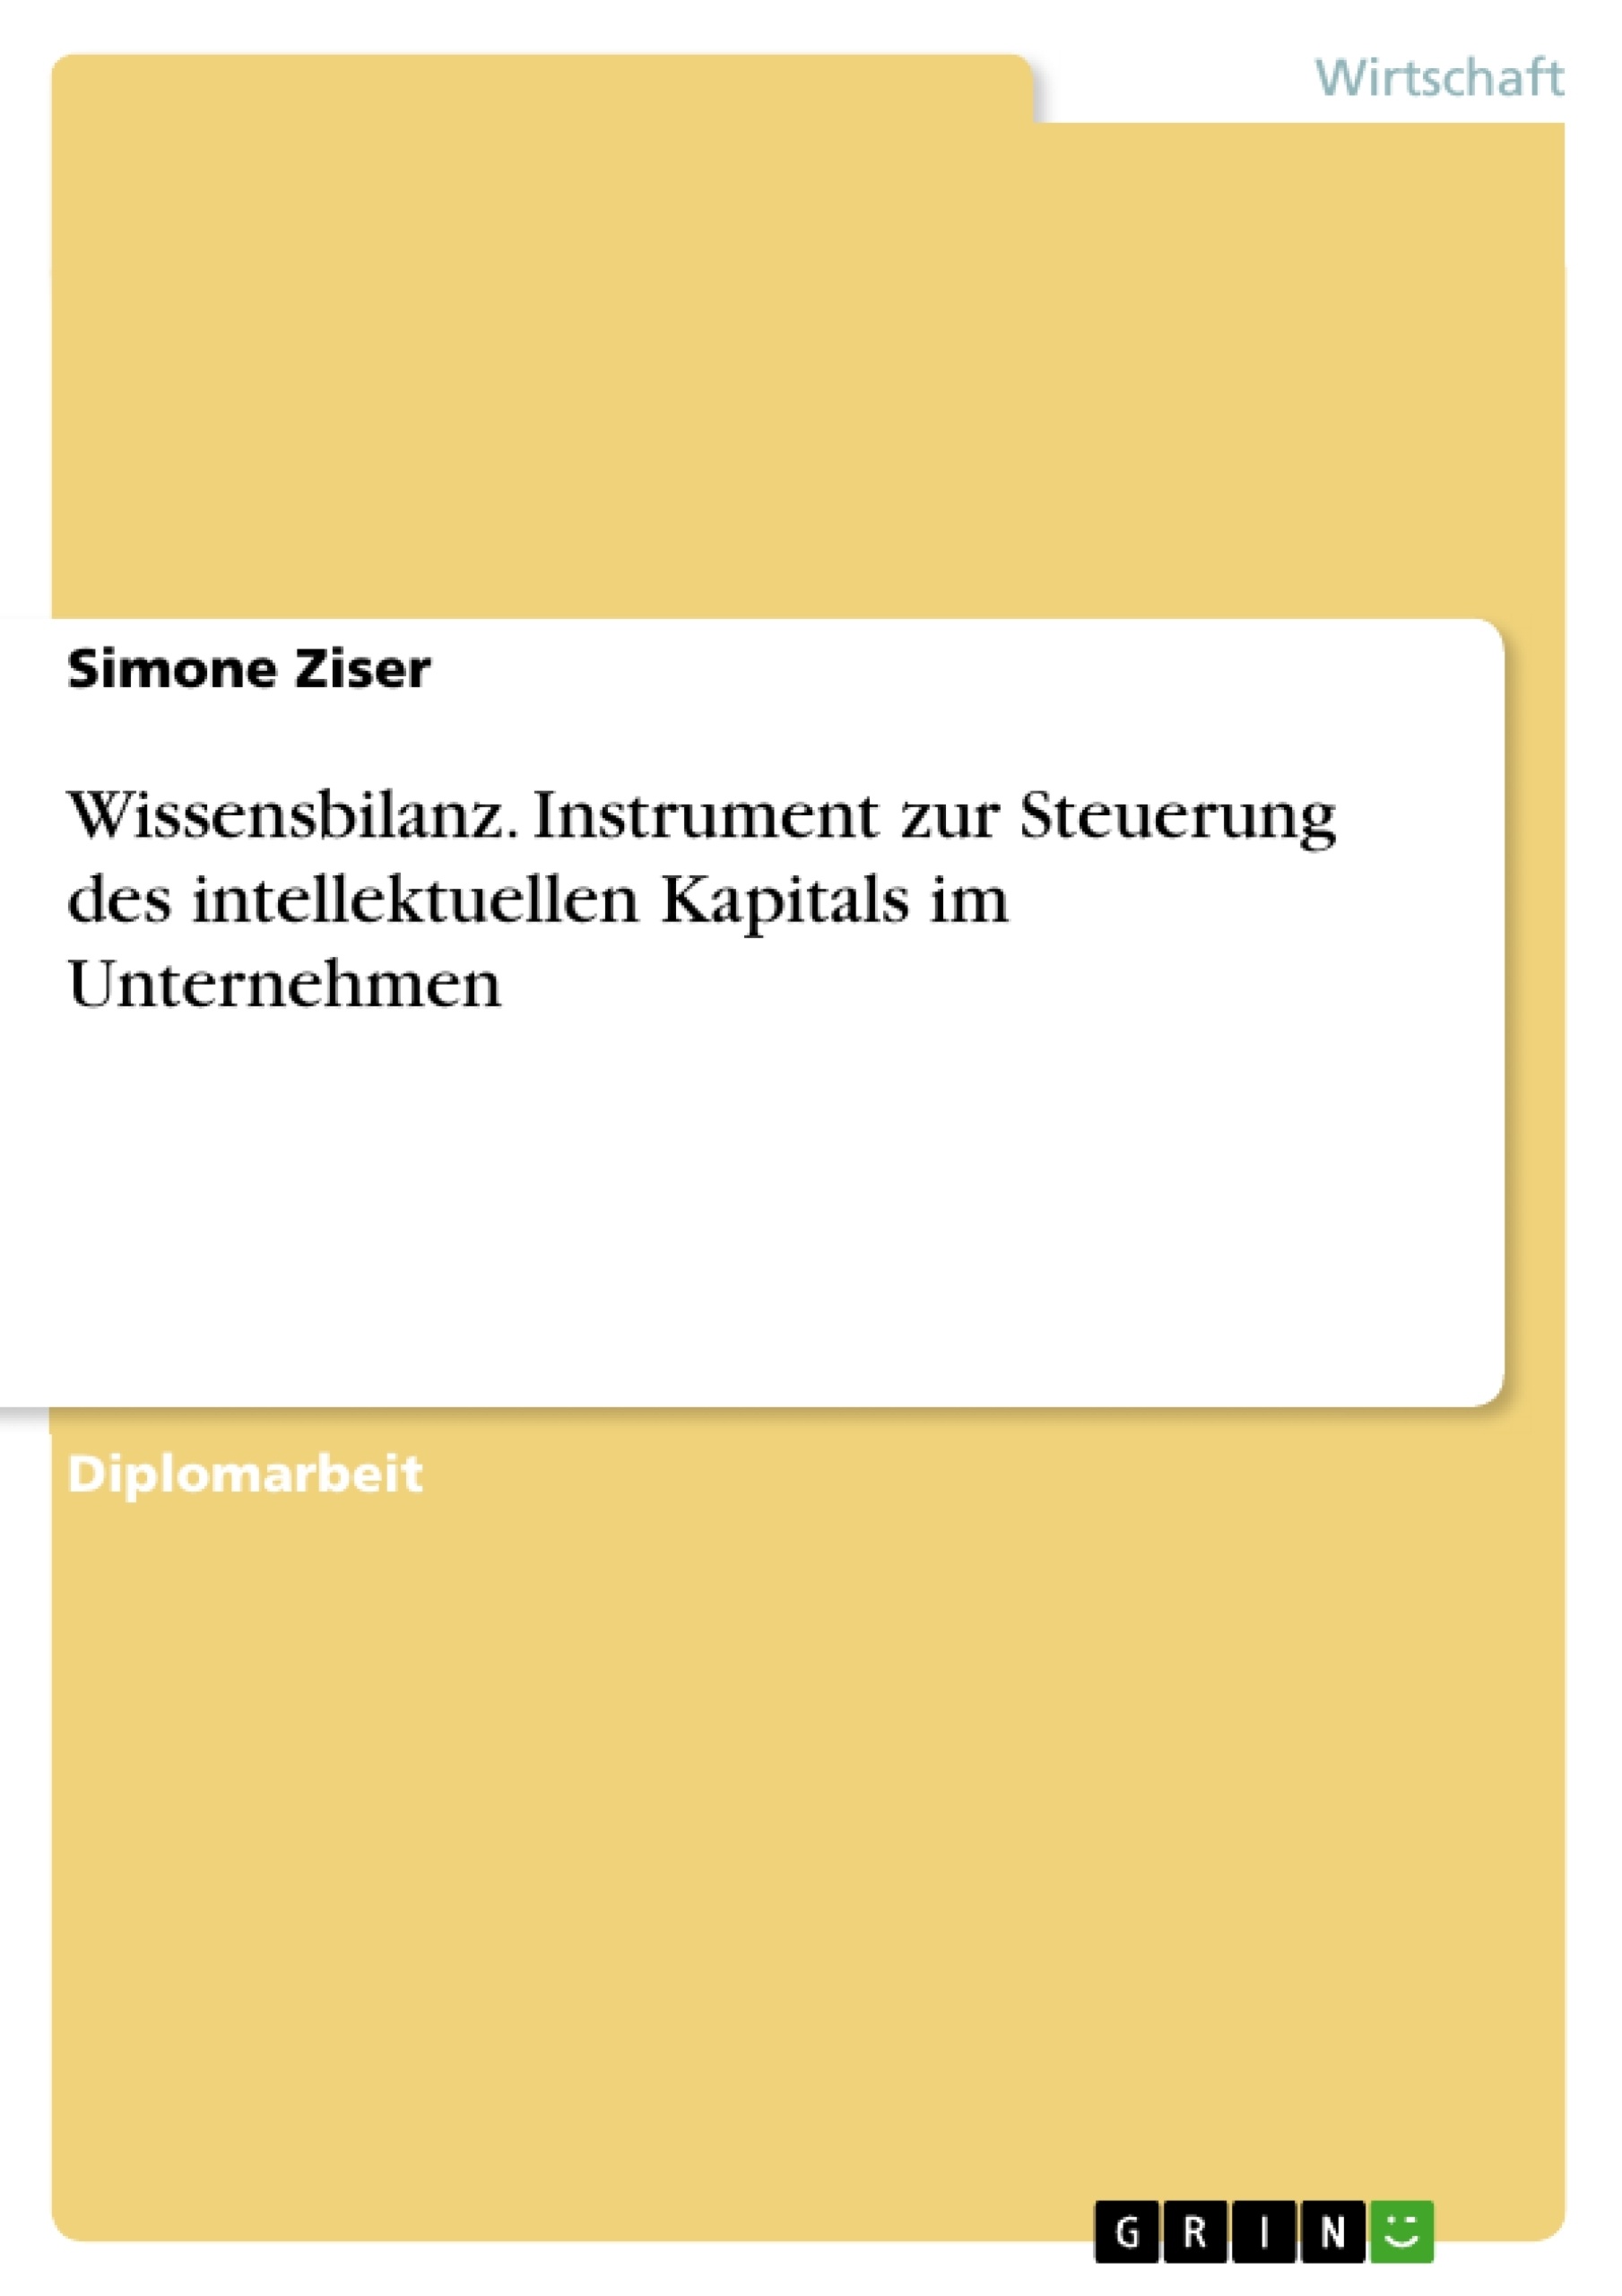 Title: Wissensbilanz. Instrument zur Steuerung des intellektuellen Kapitals im Unternehmen